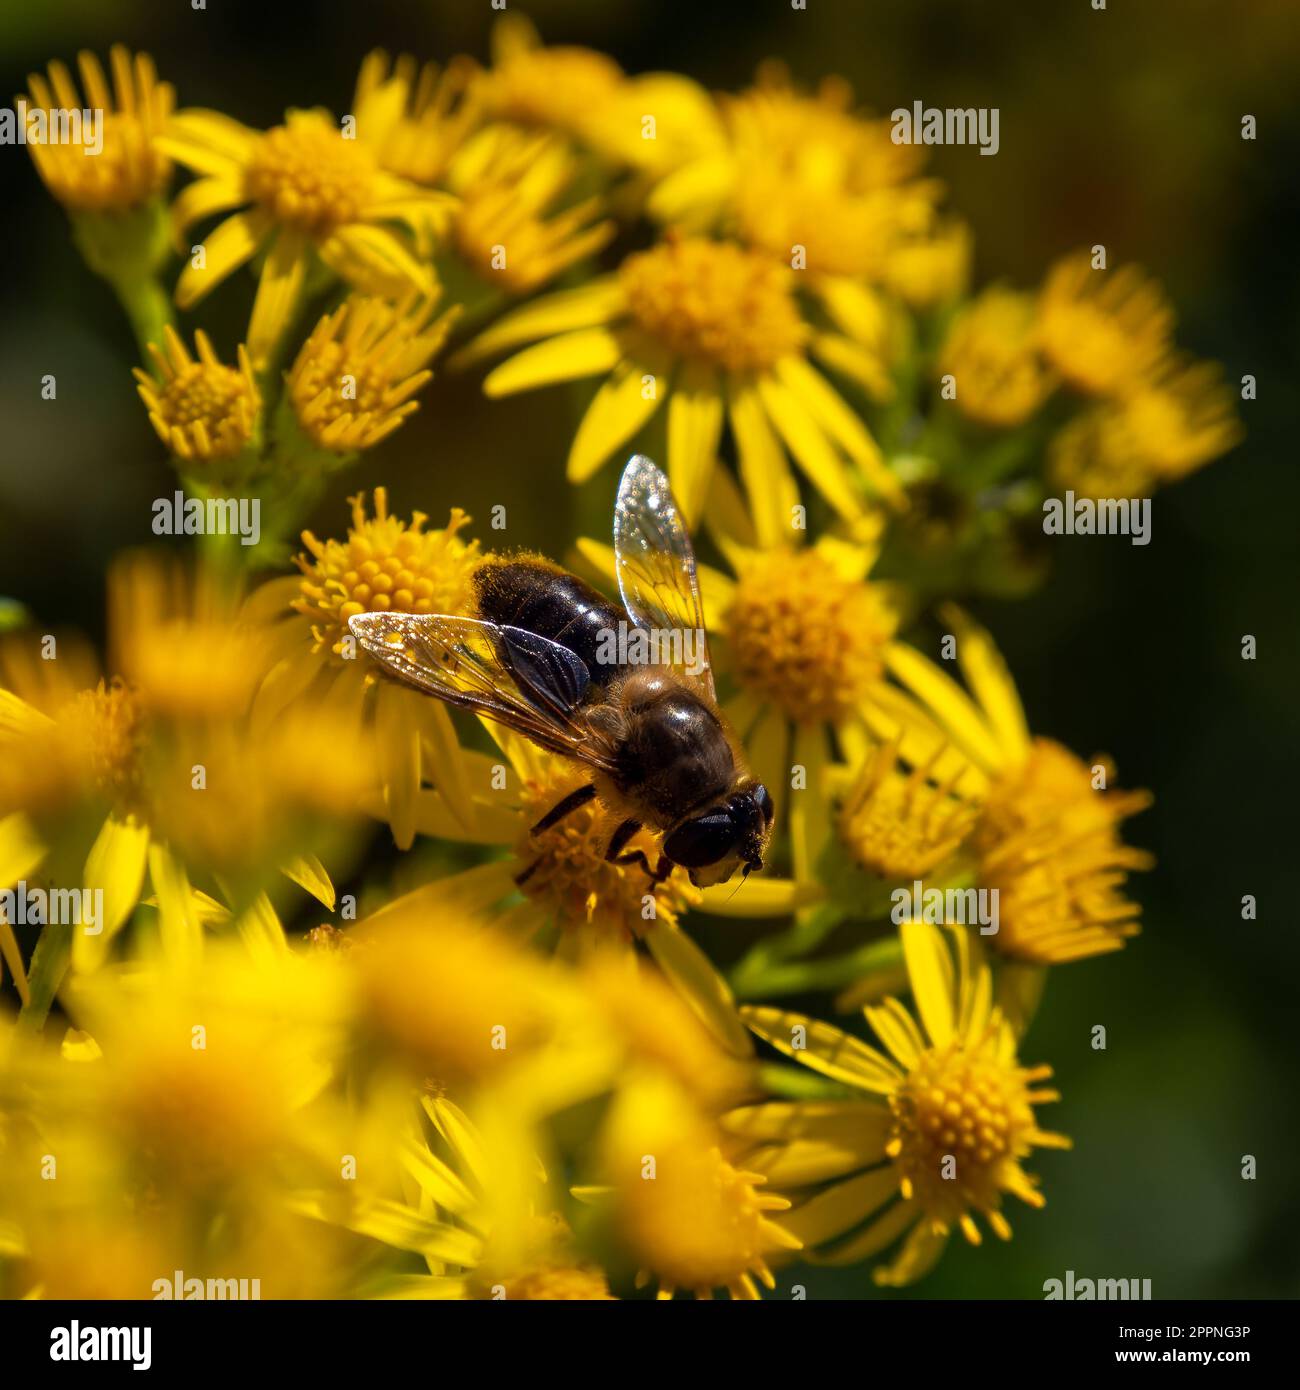 Une grande mouche semblable à une abeille se trouve sur une fleur jaune, macro. Mouches hover, également appelées mouches de fleurs ou mouches syrphides, famille des insectes Syrphidés. Banque D'Images